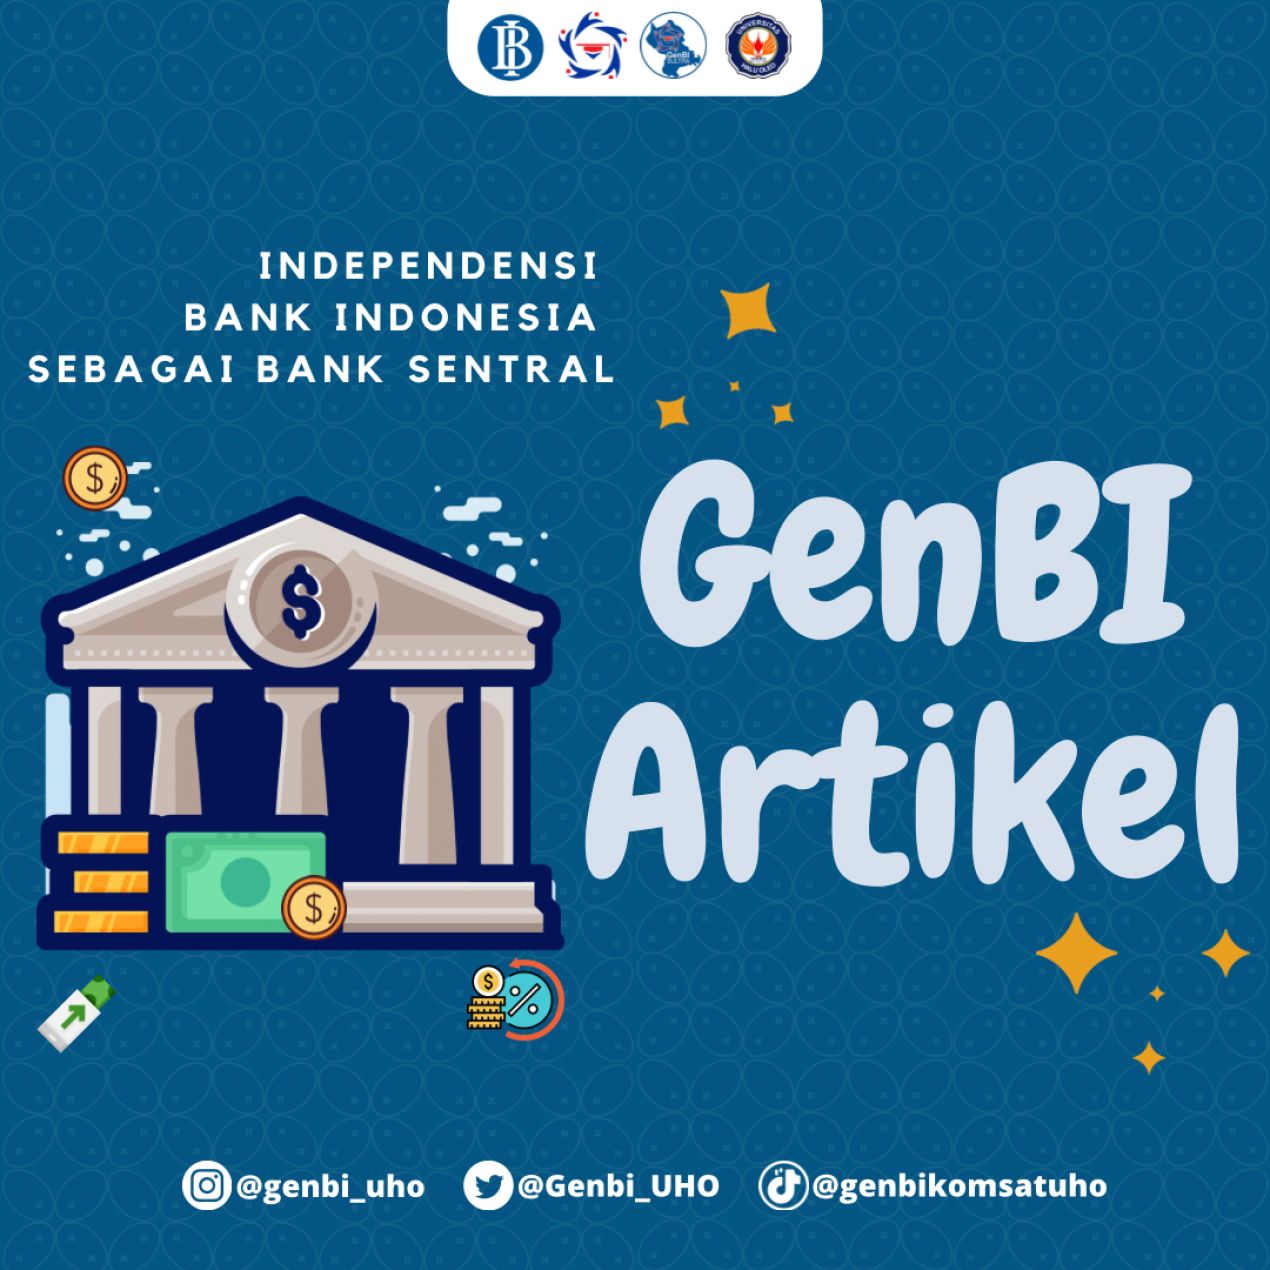 INDEPENDENSI BANK INDONESIA SEBAGAI BANK SENTRAL